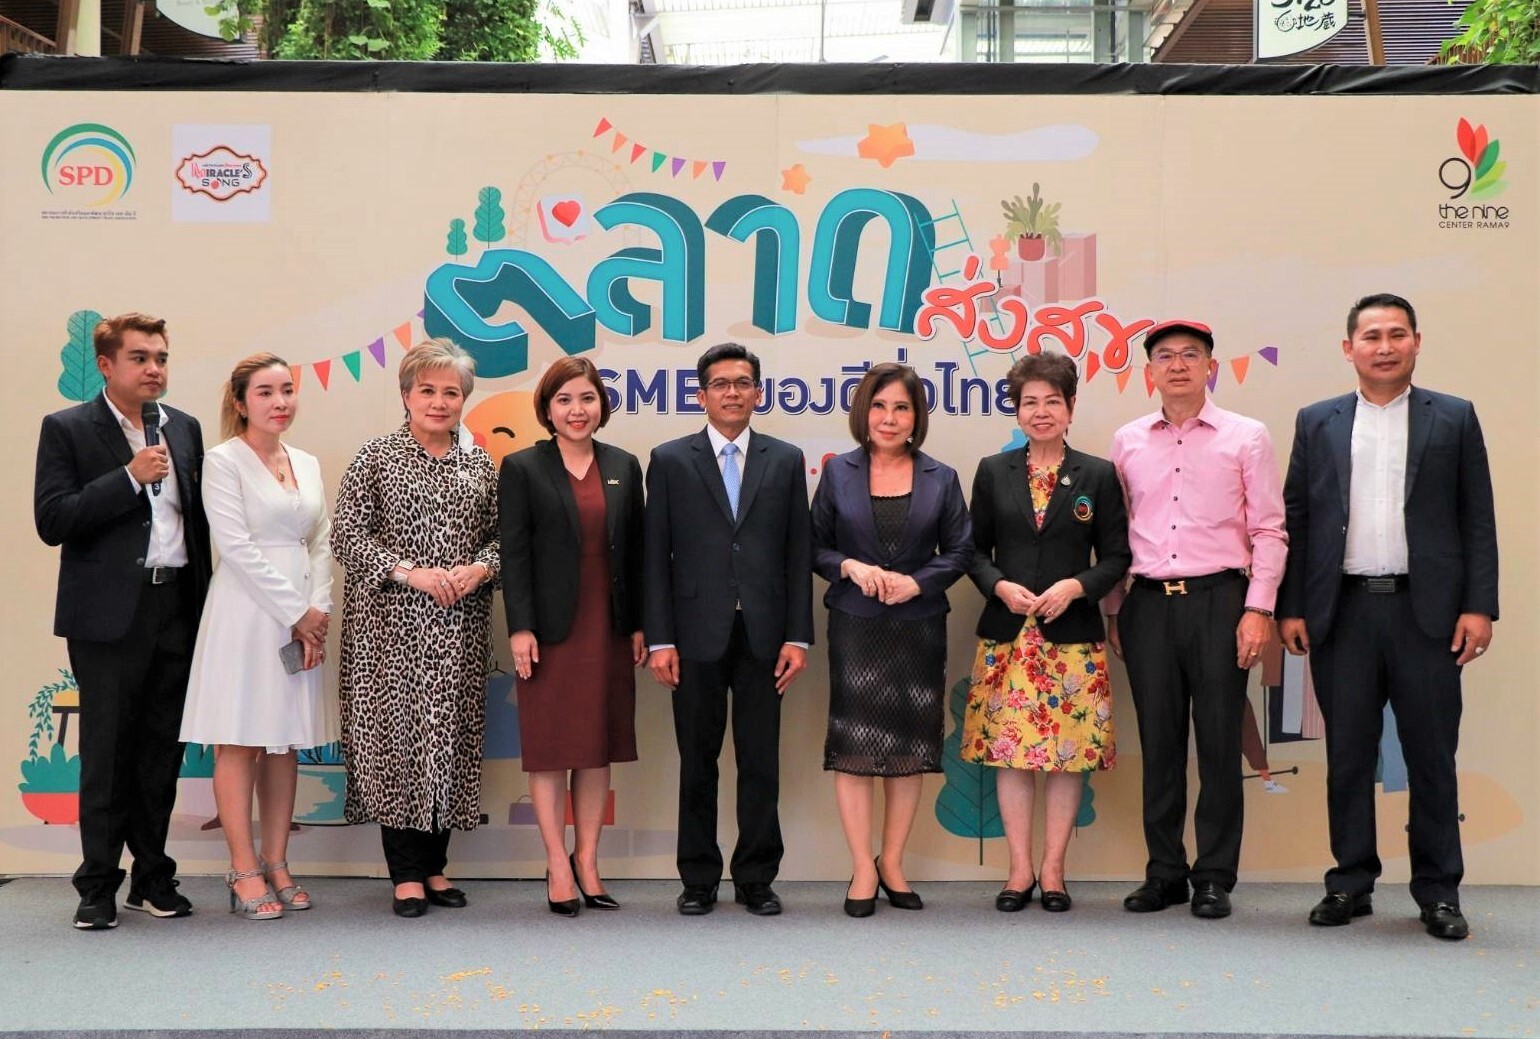 เดอะไนน์ เซ็นเตอร์ พระราม 9 จับมือ สมาคมการค้าส่งเสริมและพัฒนาธุรกิจ SME เปิดงาน "ตลาดส่งสุข SMEs ของดีทั่วไทย"